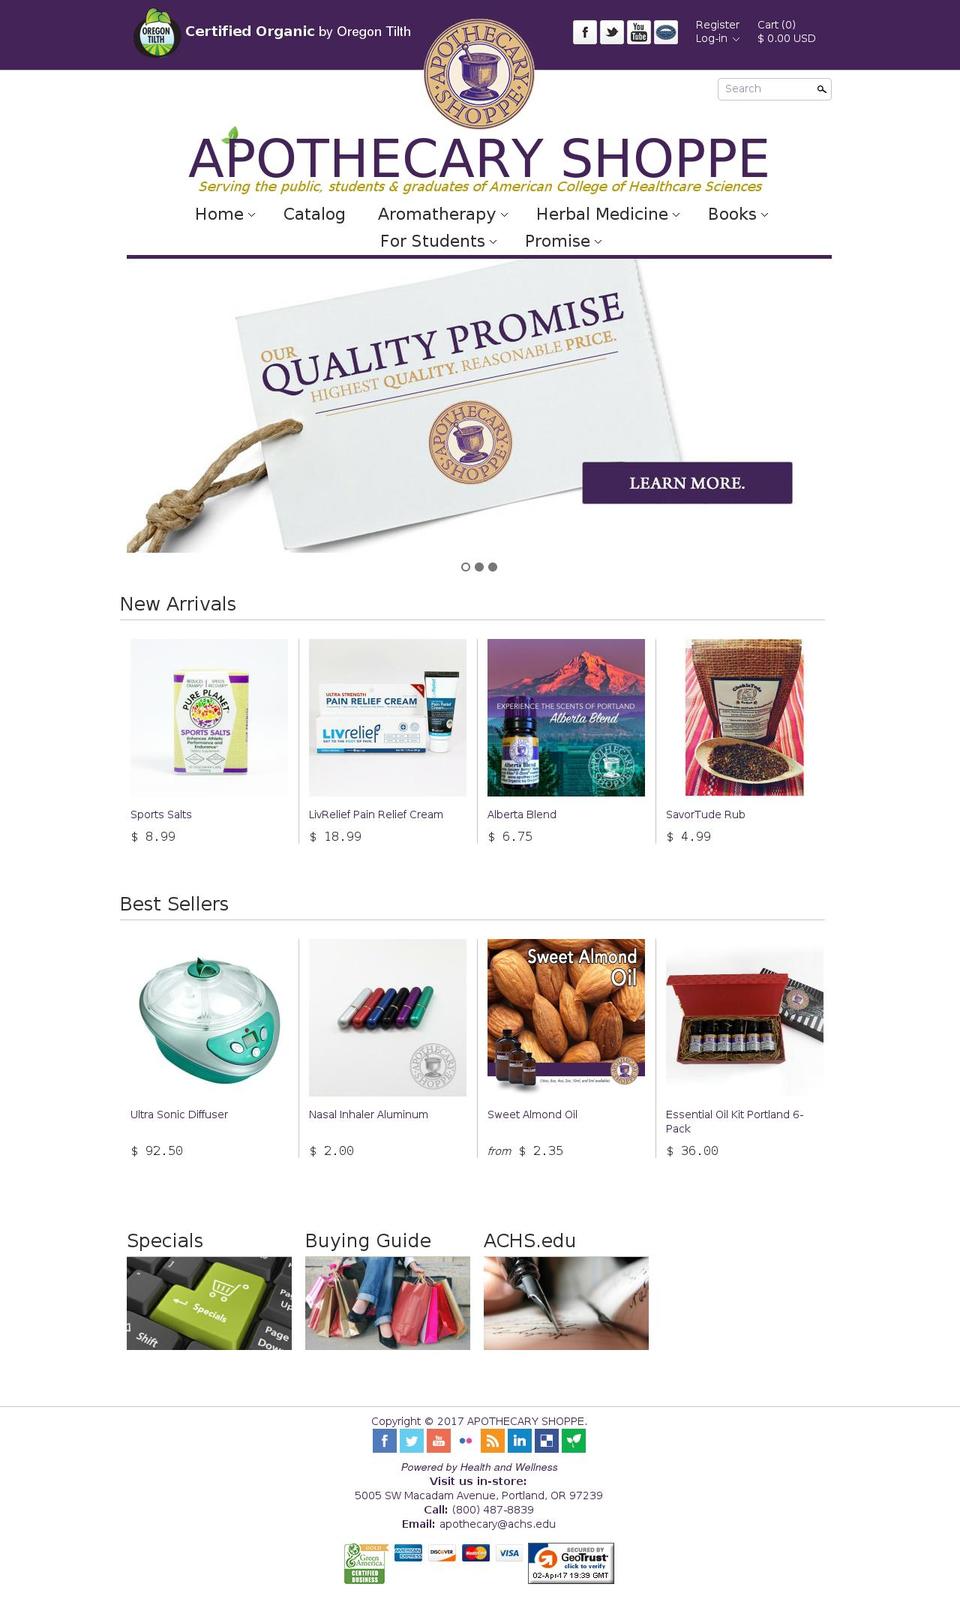 apothecary-shoppe.com shopify website screenshot